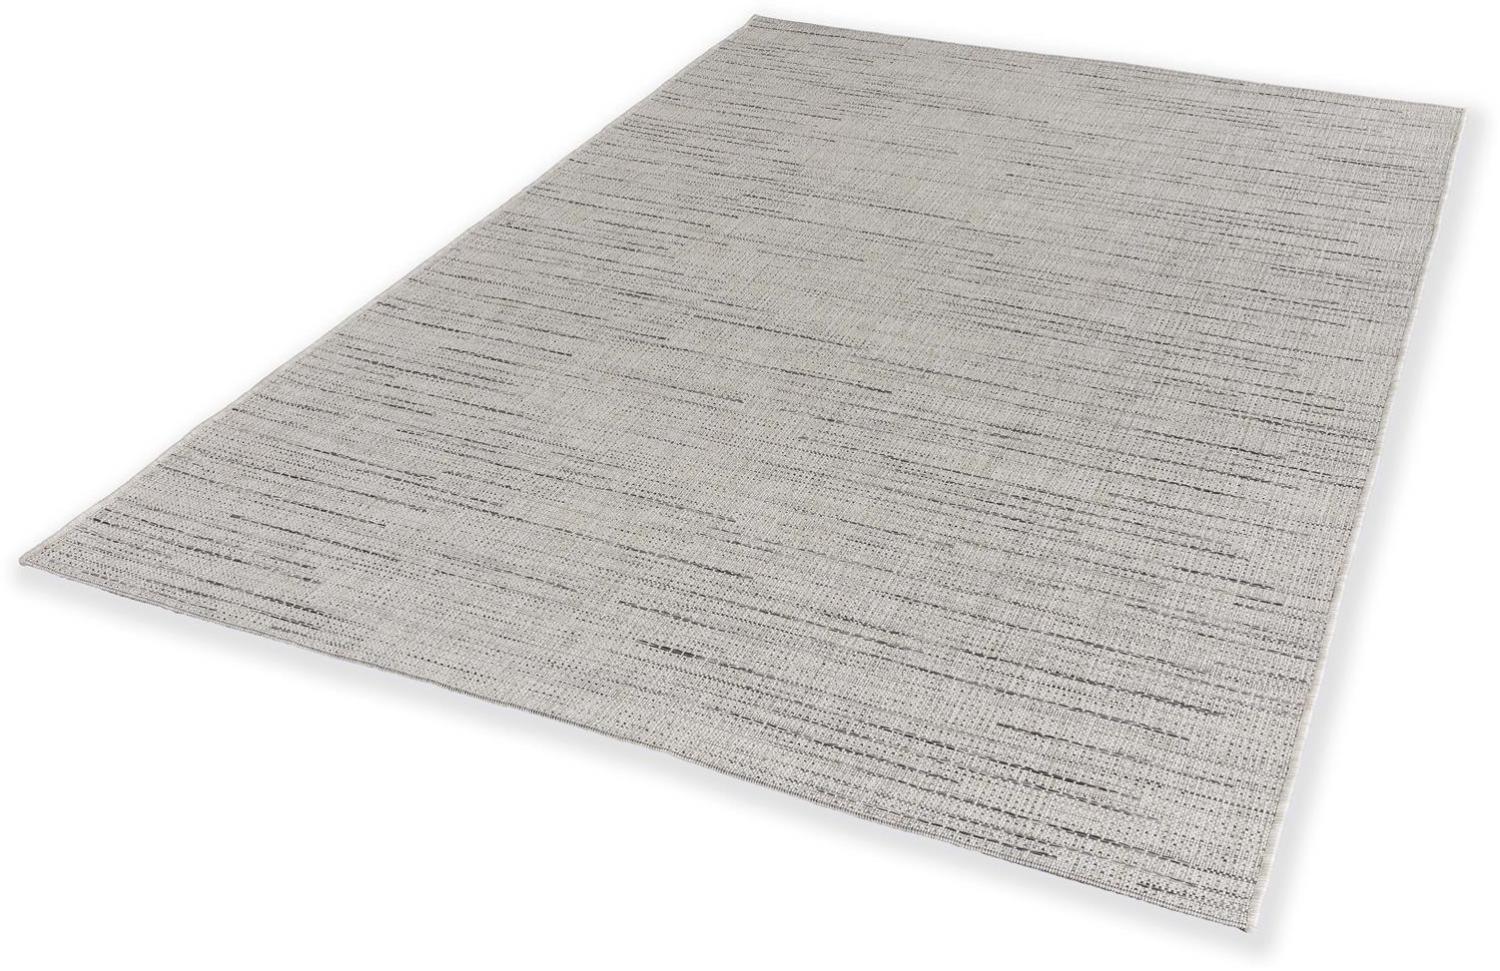 Teppich in creme aus 100% Polypropylen - 230x160x0,5cm (LxBxH) Bild 1